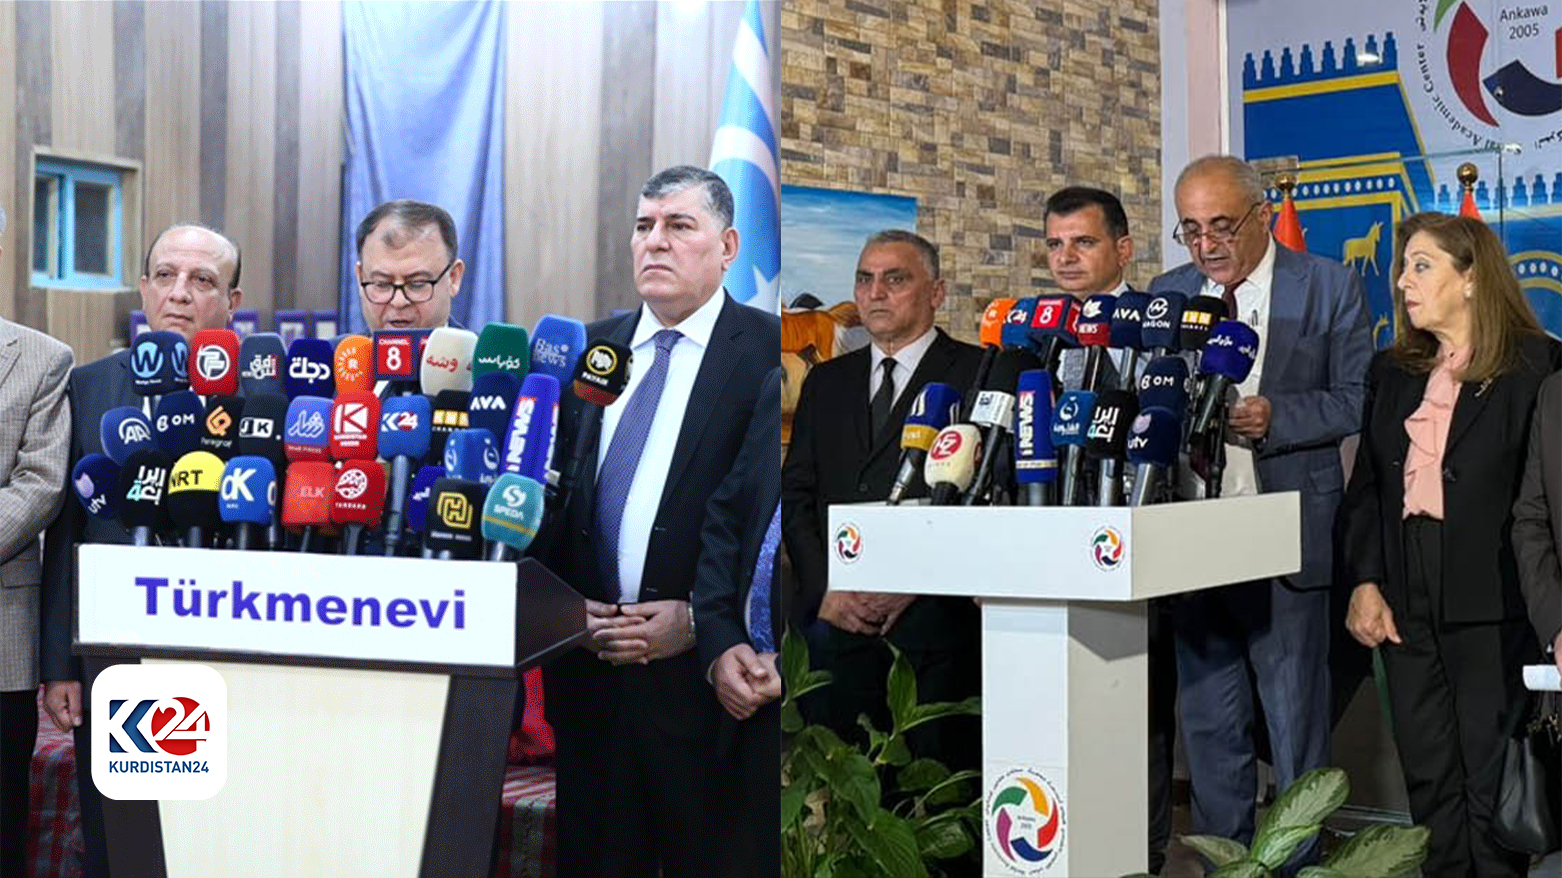 ٢٠ حزب و جریان سیاسی مسیحی و ترکمان از موضعگیری پارت دموکرات کوردستان حمایت کردند